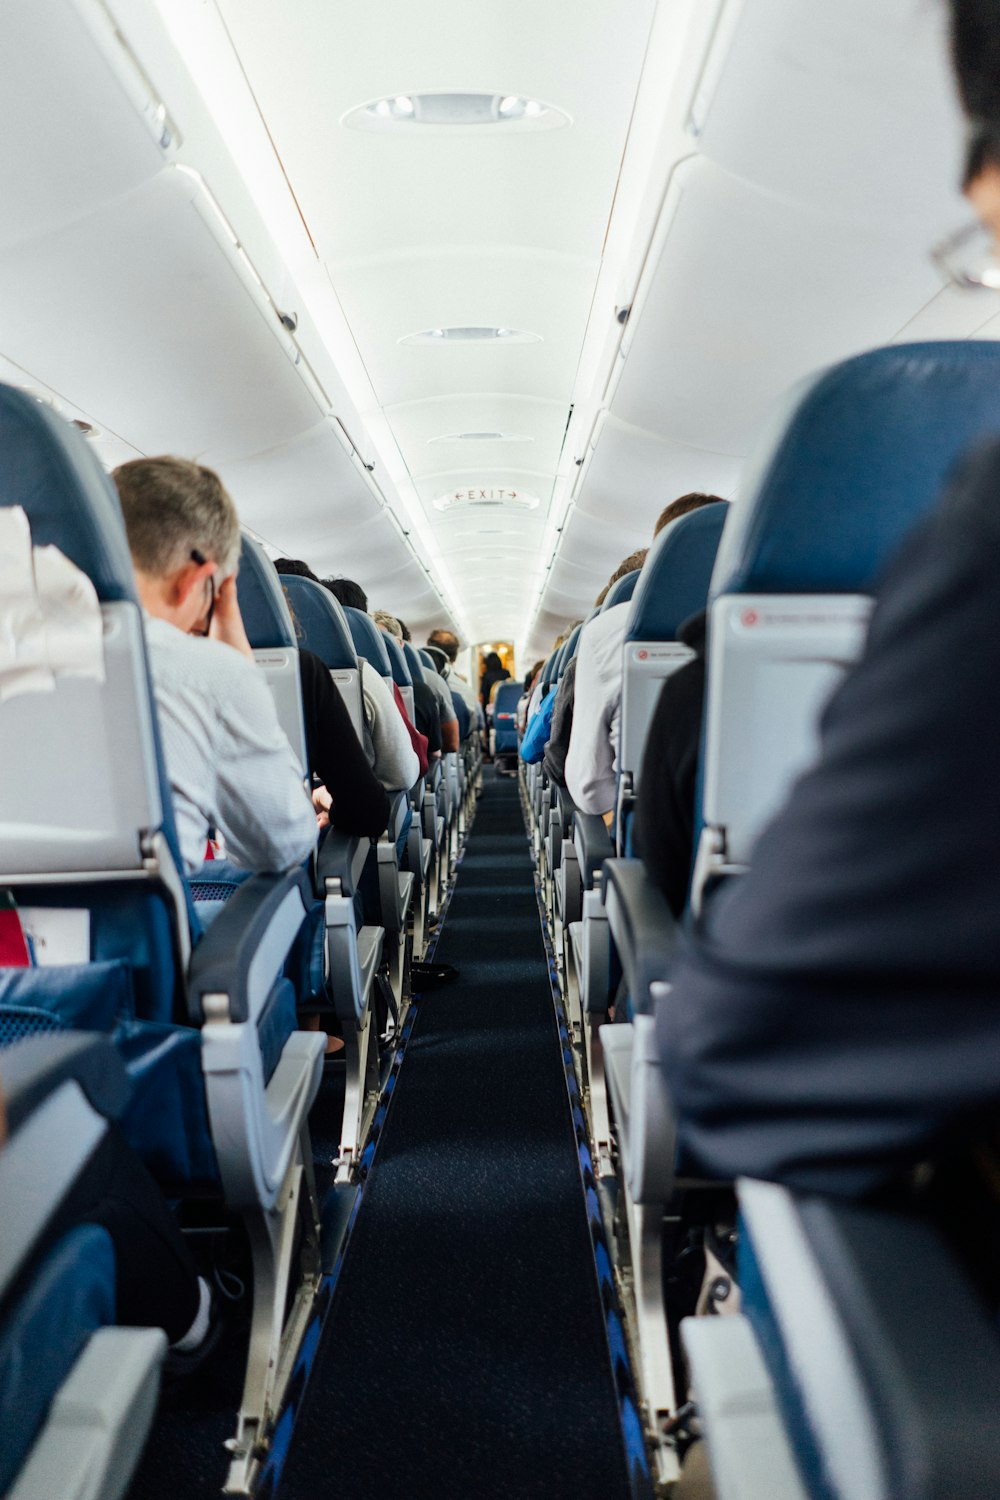 Personas sentadas dentro del avión